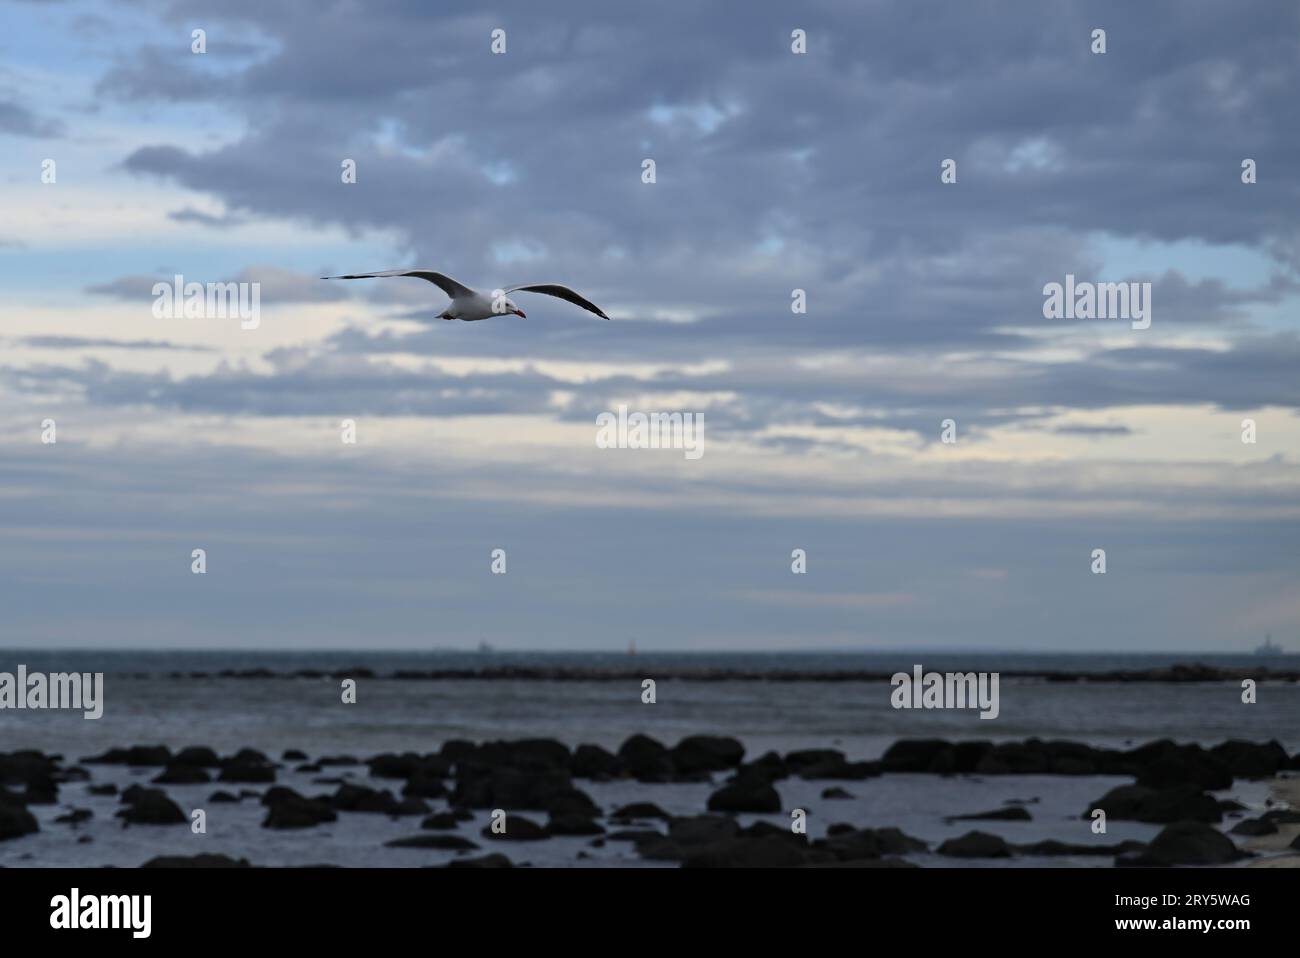 Gabbiano, o gabbiano d'argento, in volo sulle rocce nelle acque poco profonde vicino a una spiaggia, durante una giornata grigia e nuvolosa Foto Stock